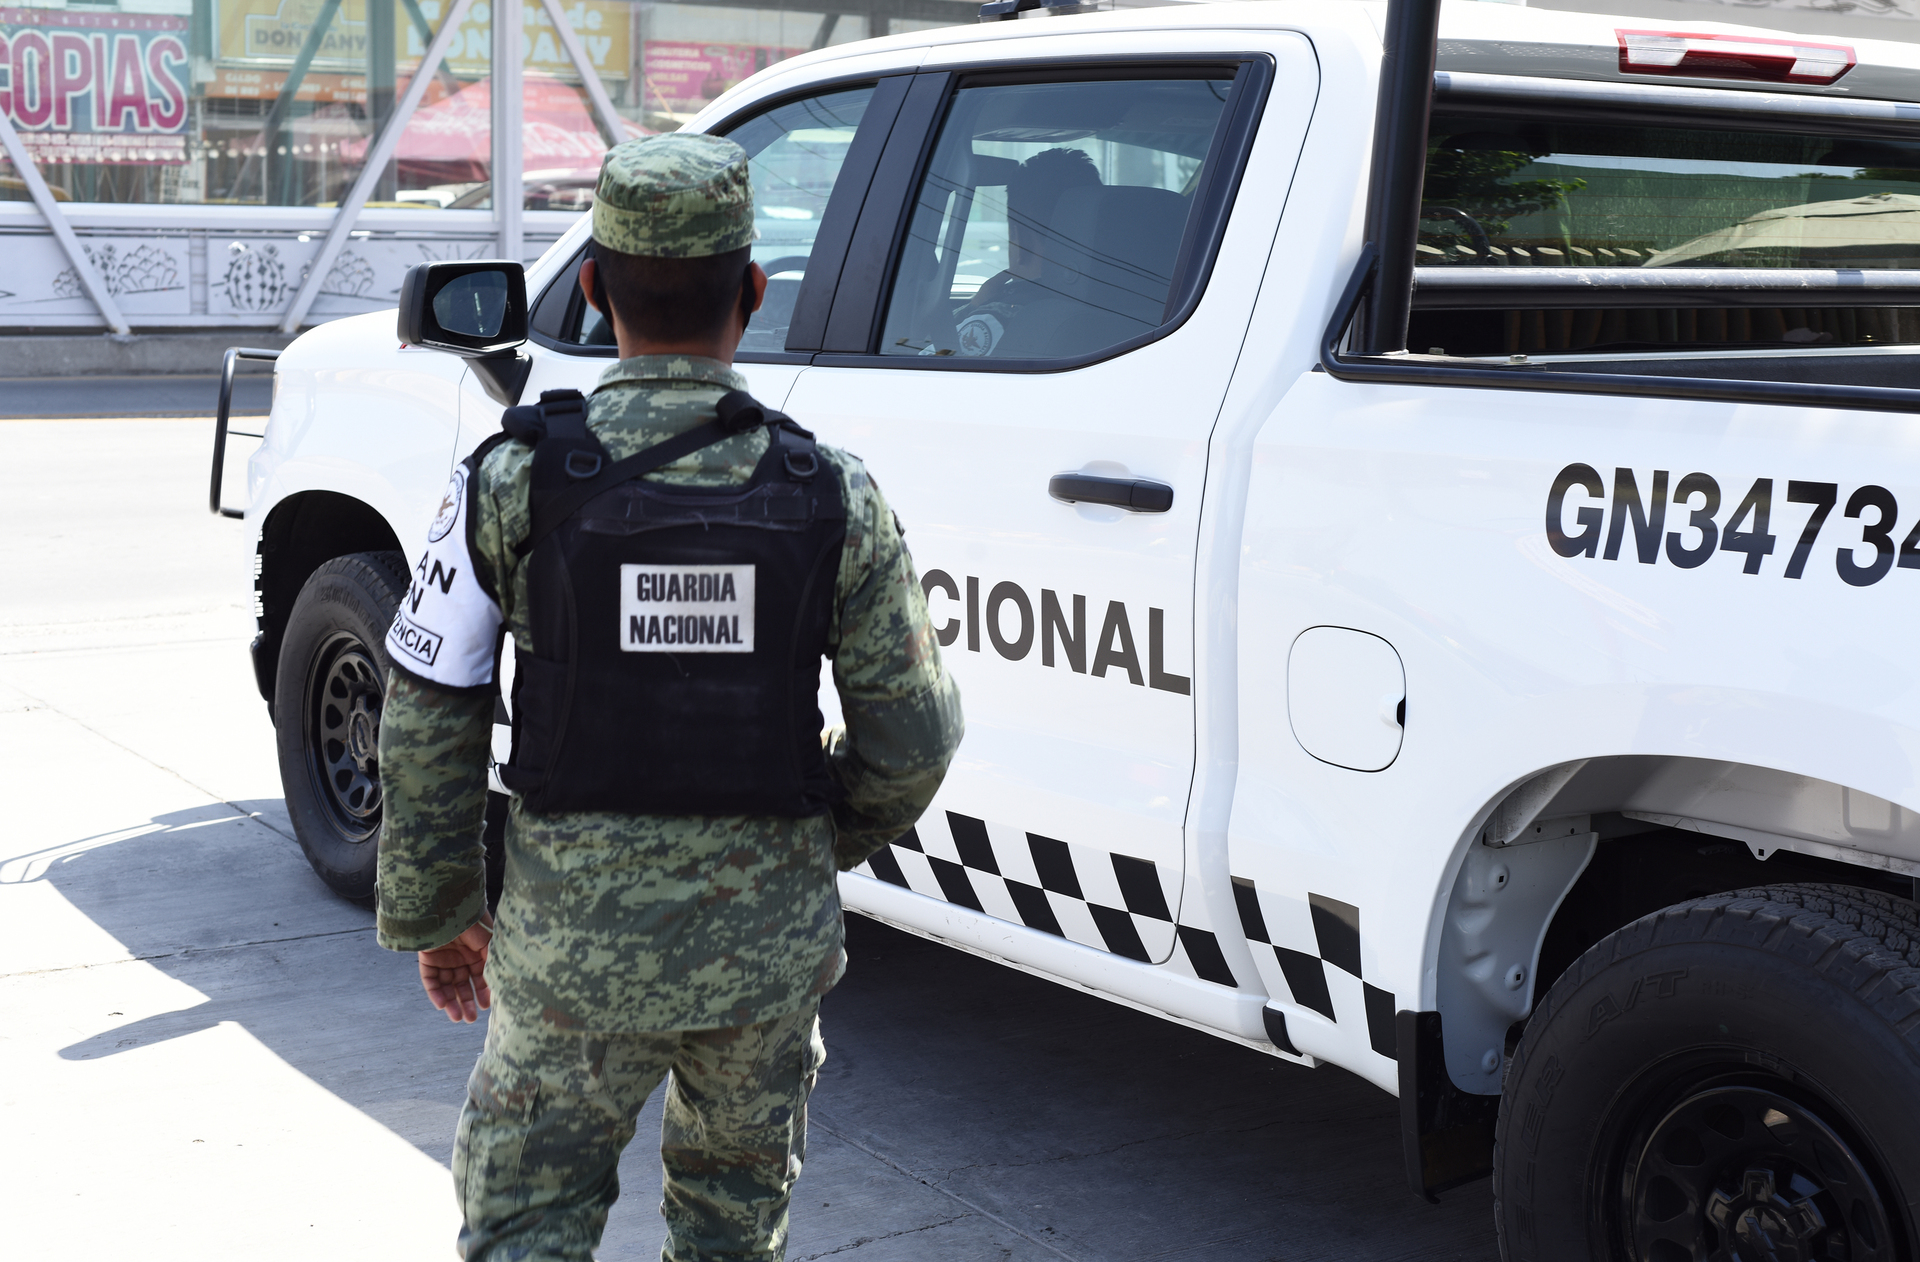 En diez estados del país, entre ellos Coahuila, integrantes de la Guardia Nacional (GN) interceptaron alrededor de 120 paquetes con aparente marihuana.